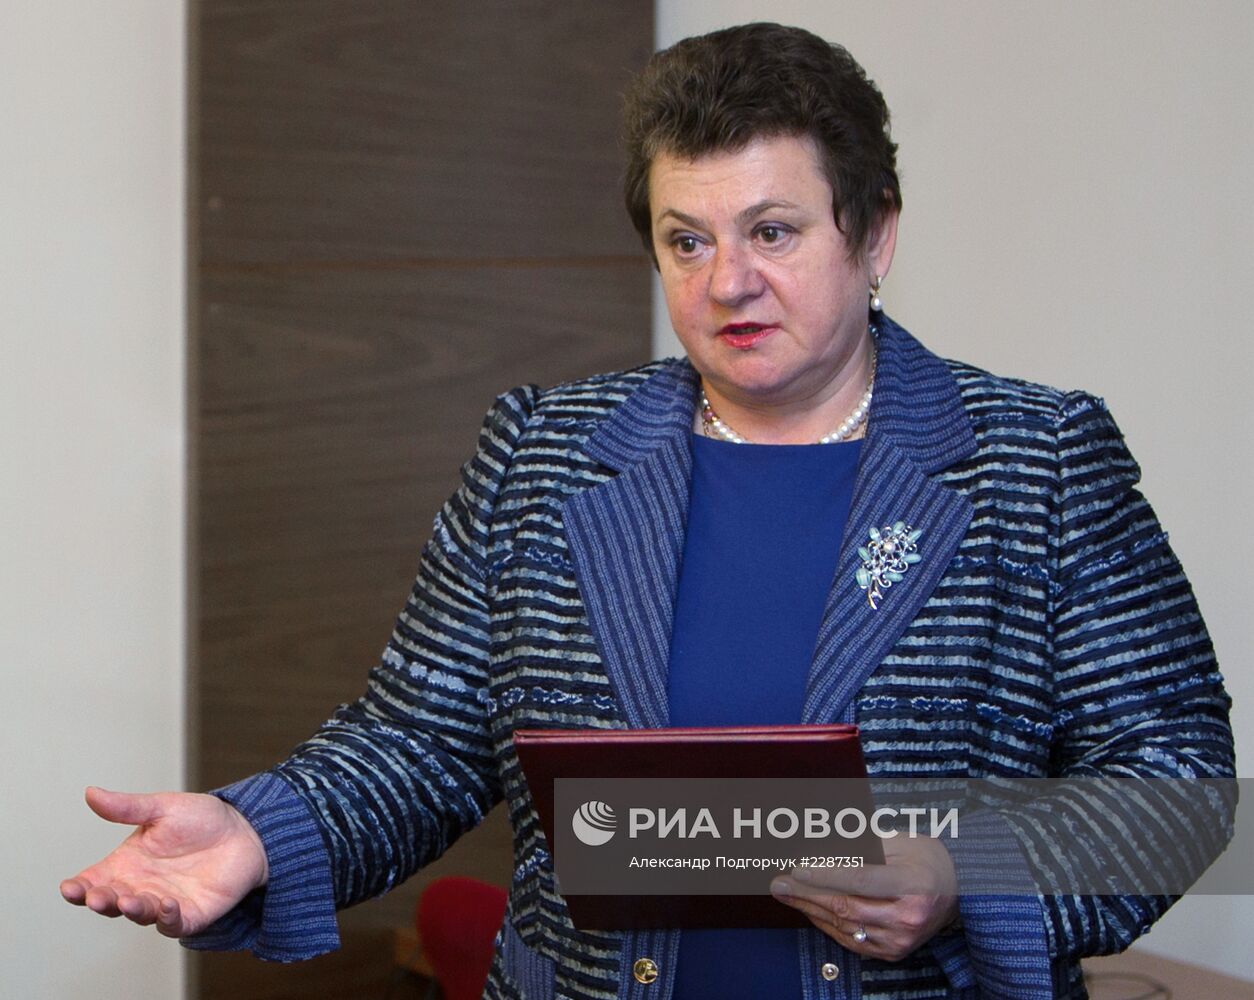 С.Орлова получила удостоверение губернатора Владимирской области